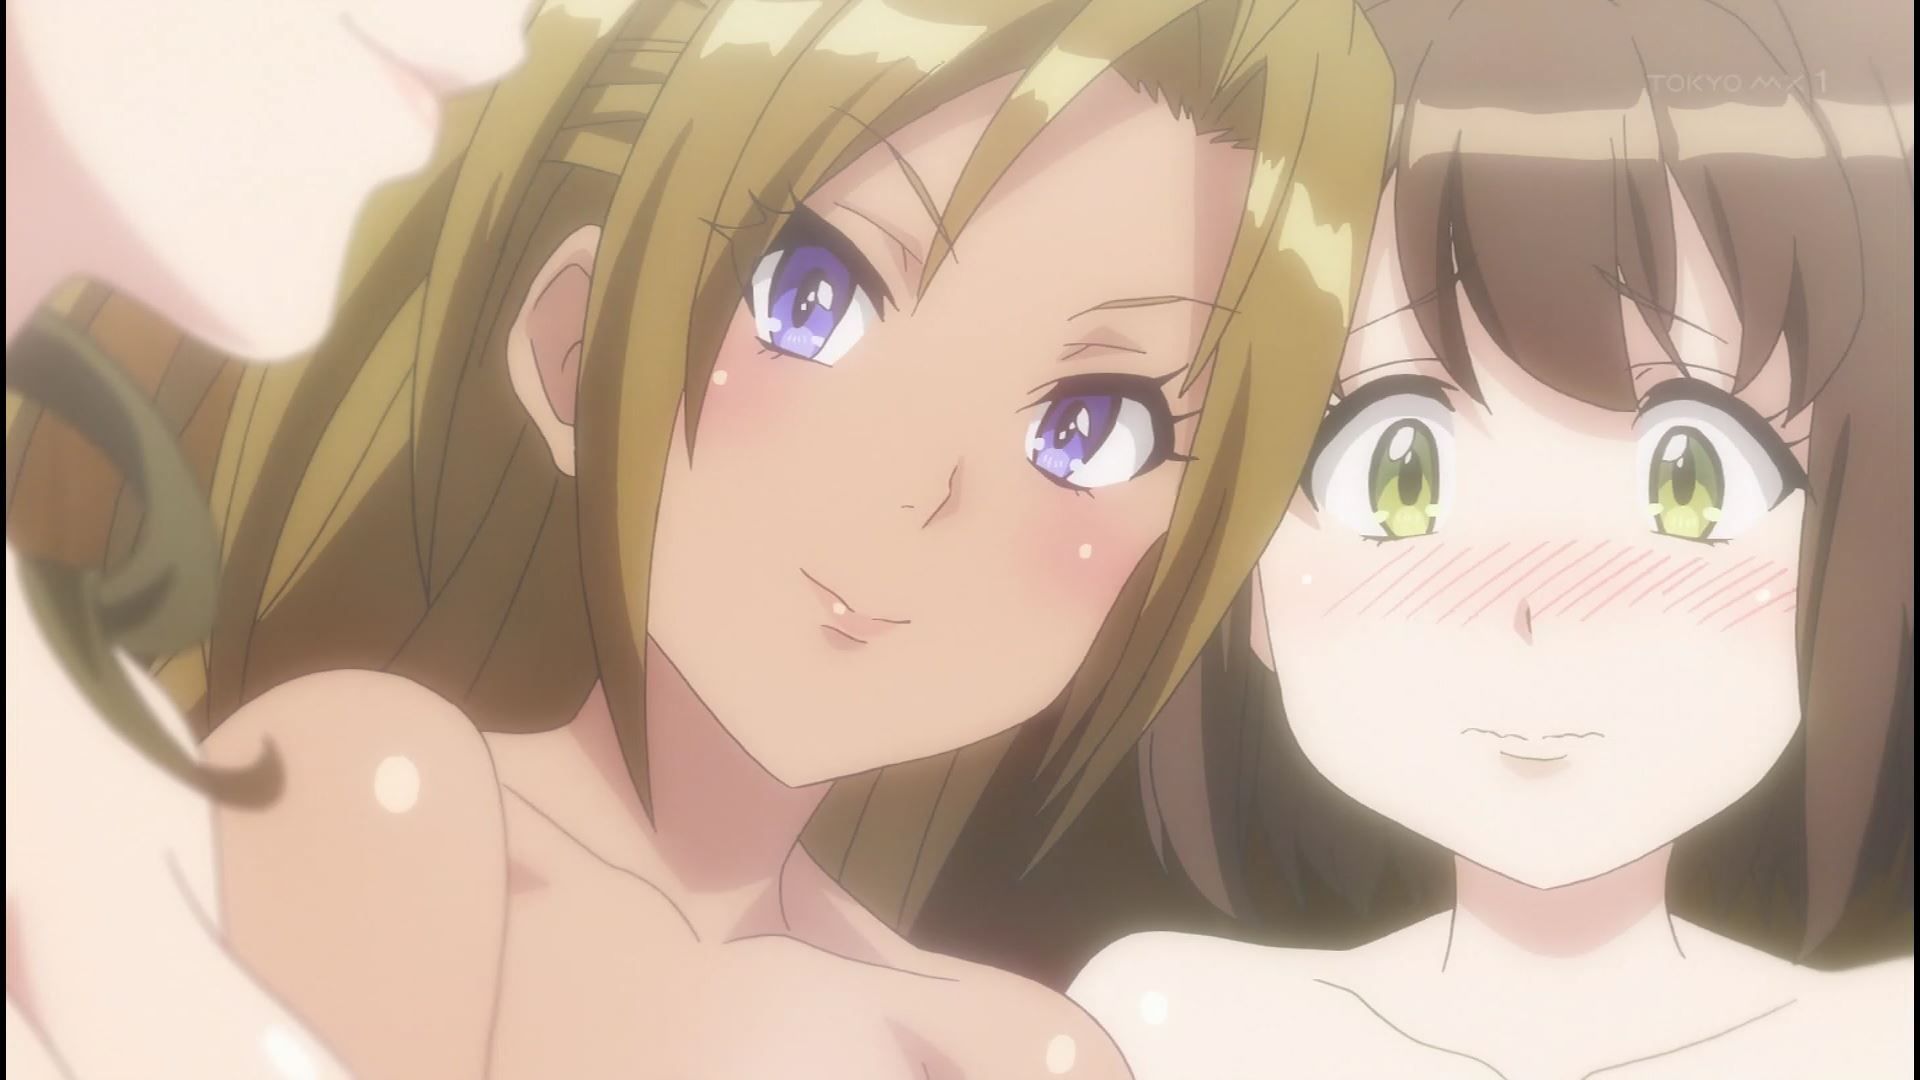 Anime [Kandagawa JETGIRLS] 8 episodes of girls erotic round-view bath bathing scene! 23